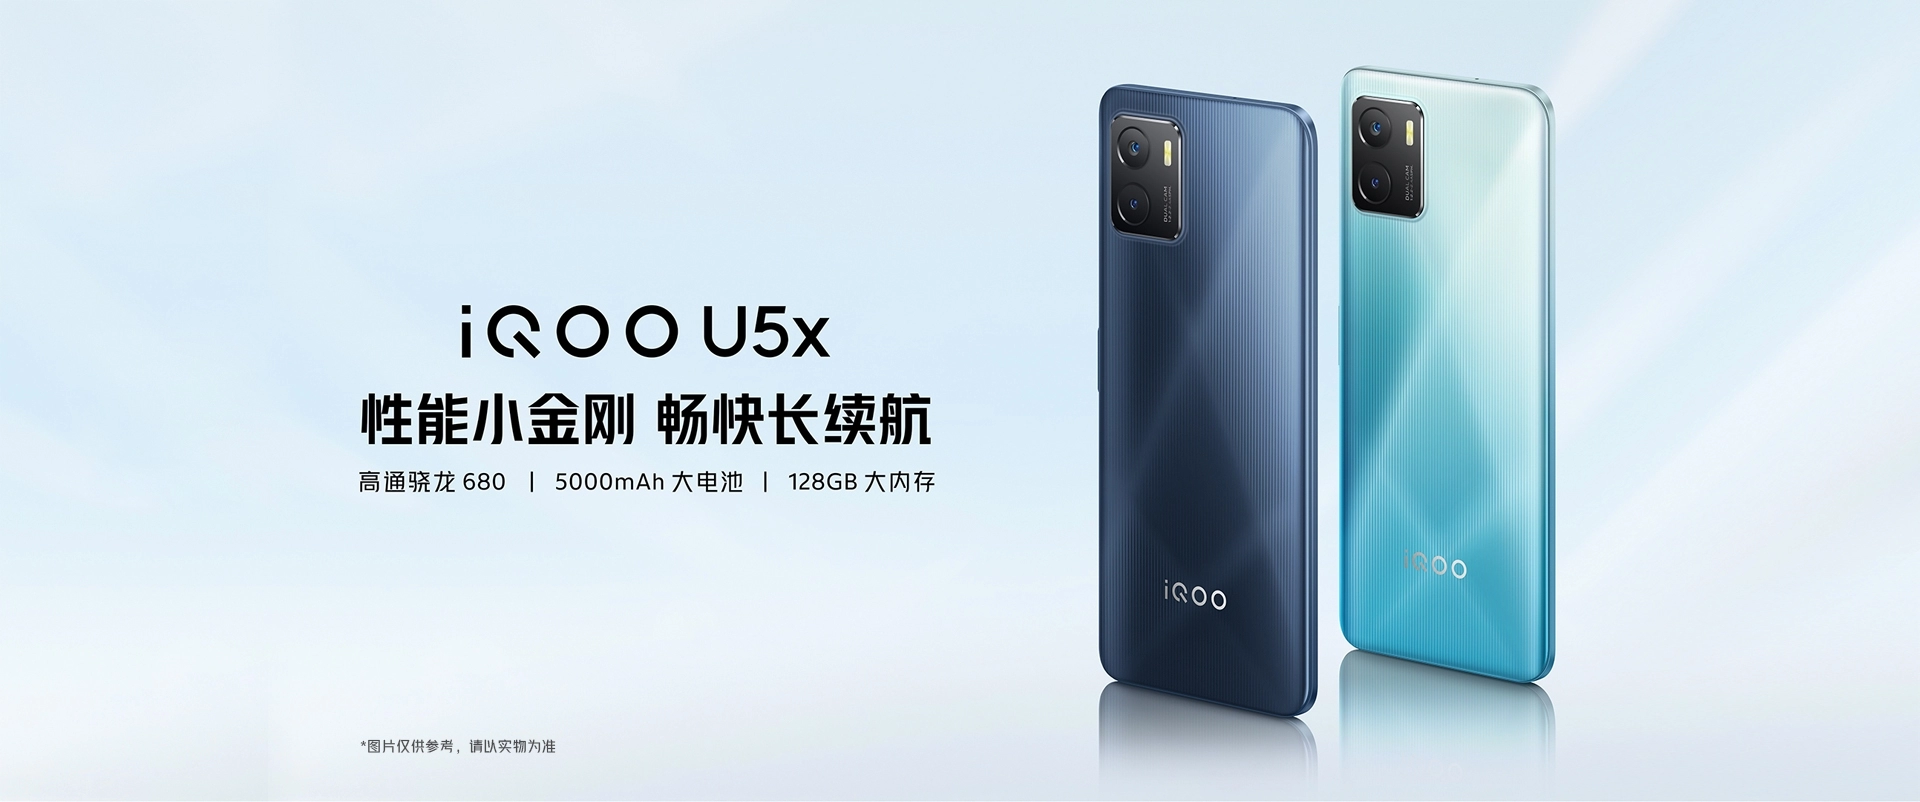 iQOO U5x发布 千元机不支持5G网络